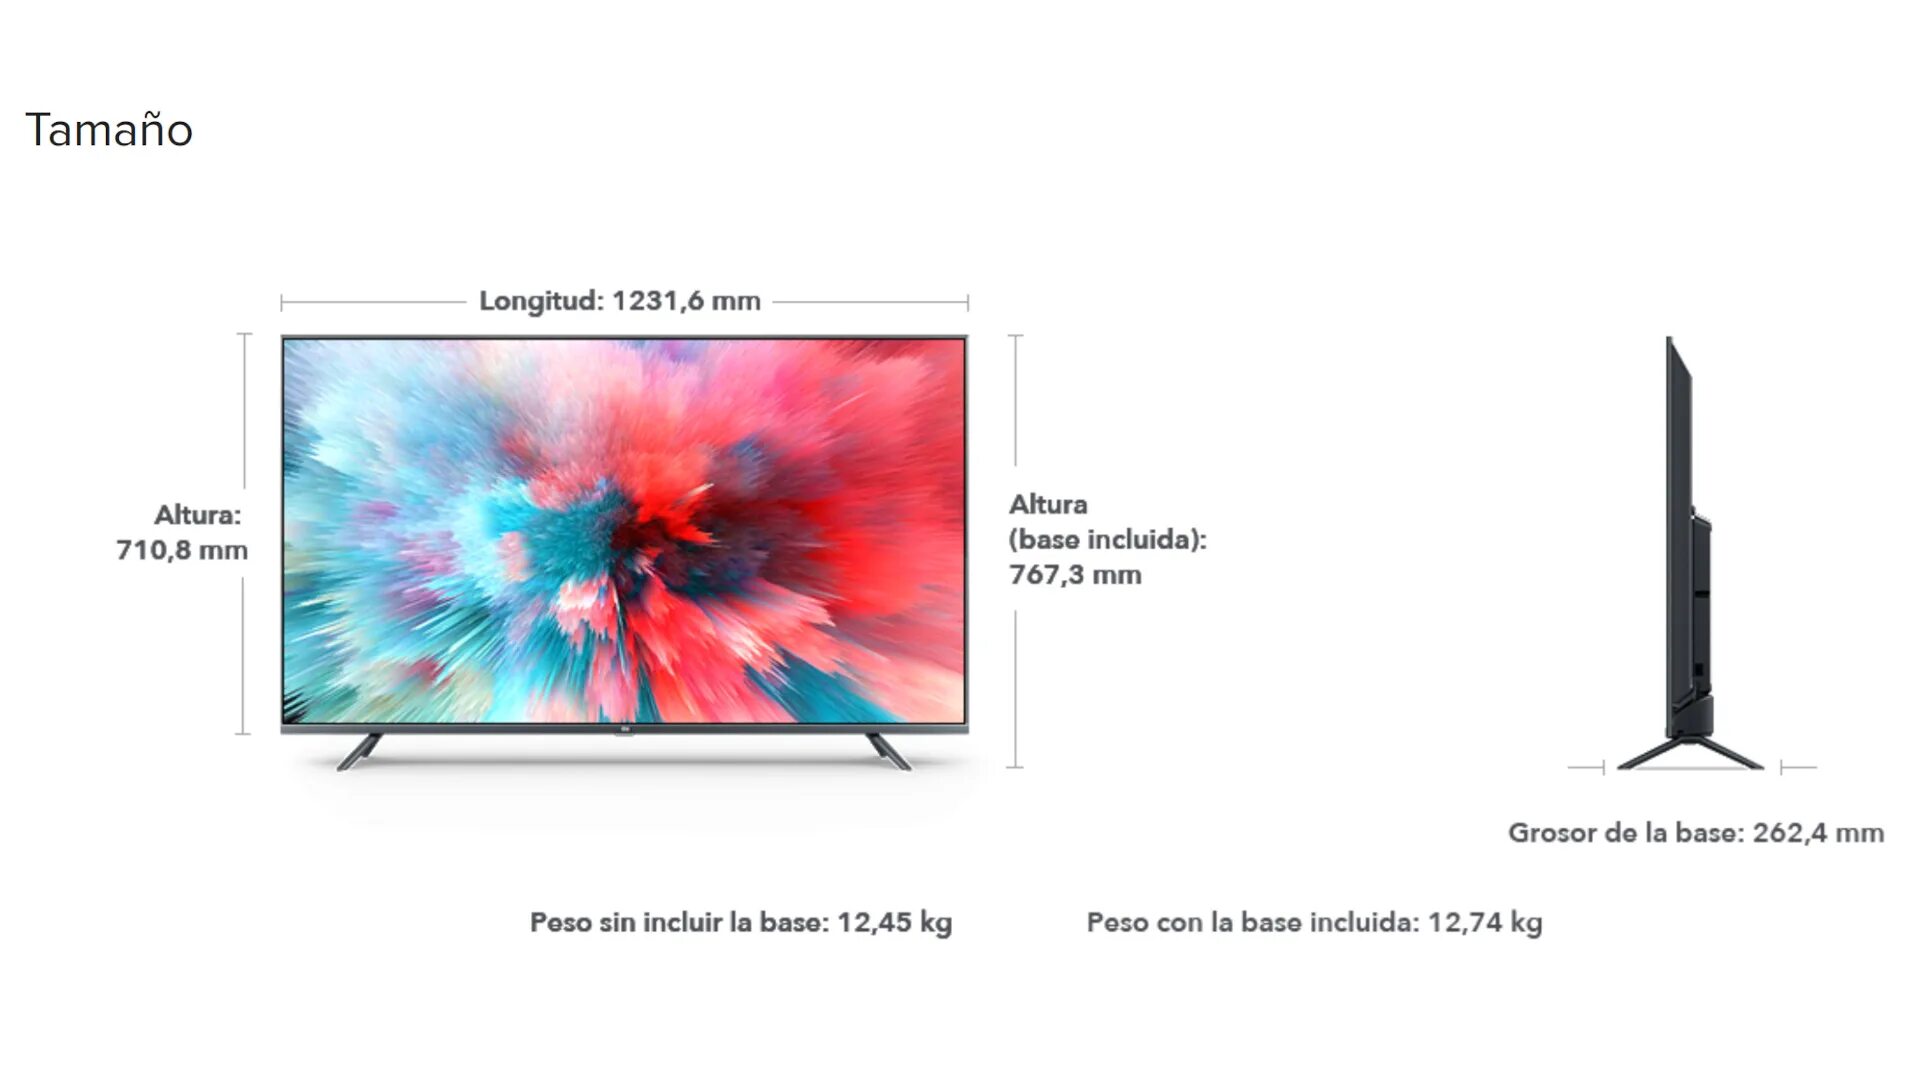 Телевизор 65 какие размеры. Телевизор самсунг 55 дюймов габариты в см. Размер телевизора самсунг 50 дюймов. Xiaomi mi TV 4s 55 Размеры. Телевизор самсунг 55 Размеры.